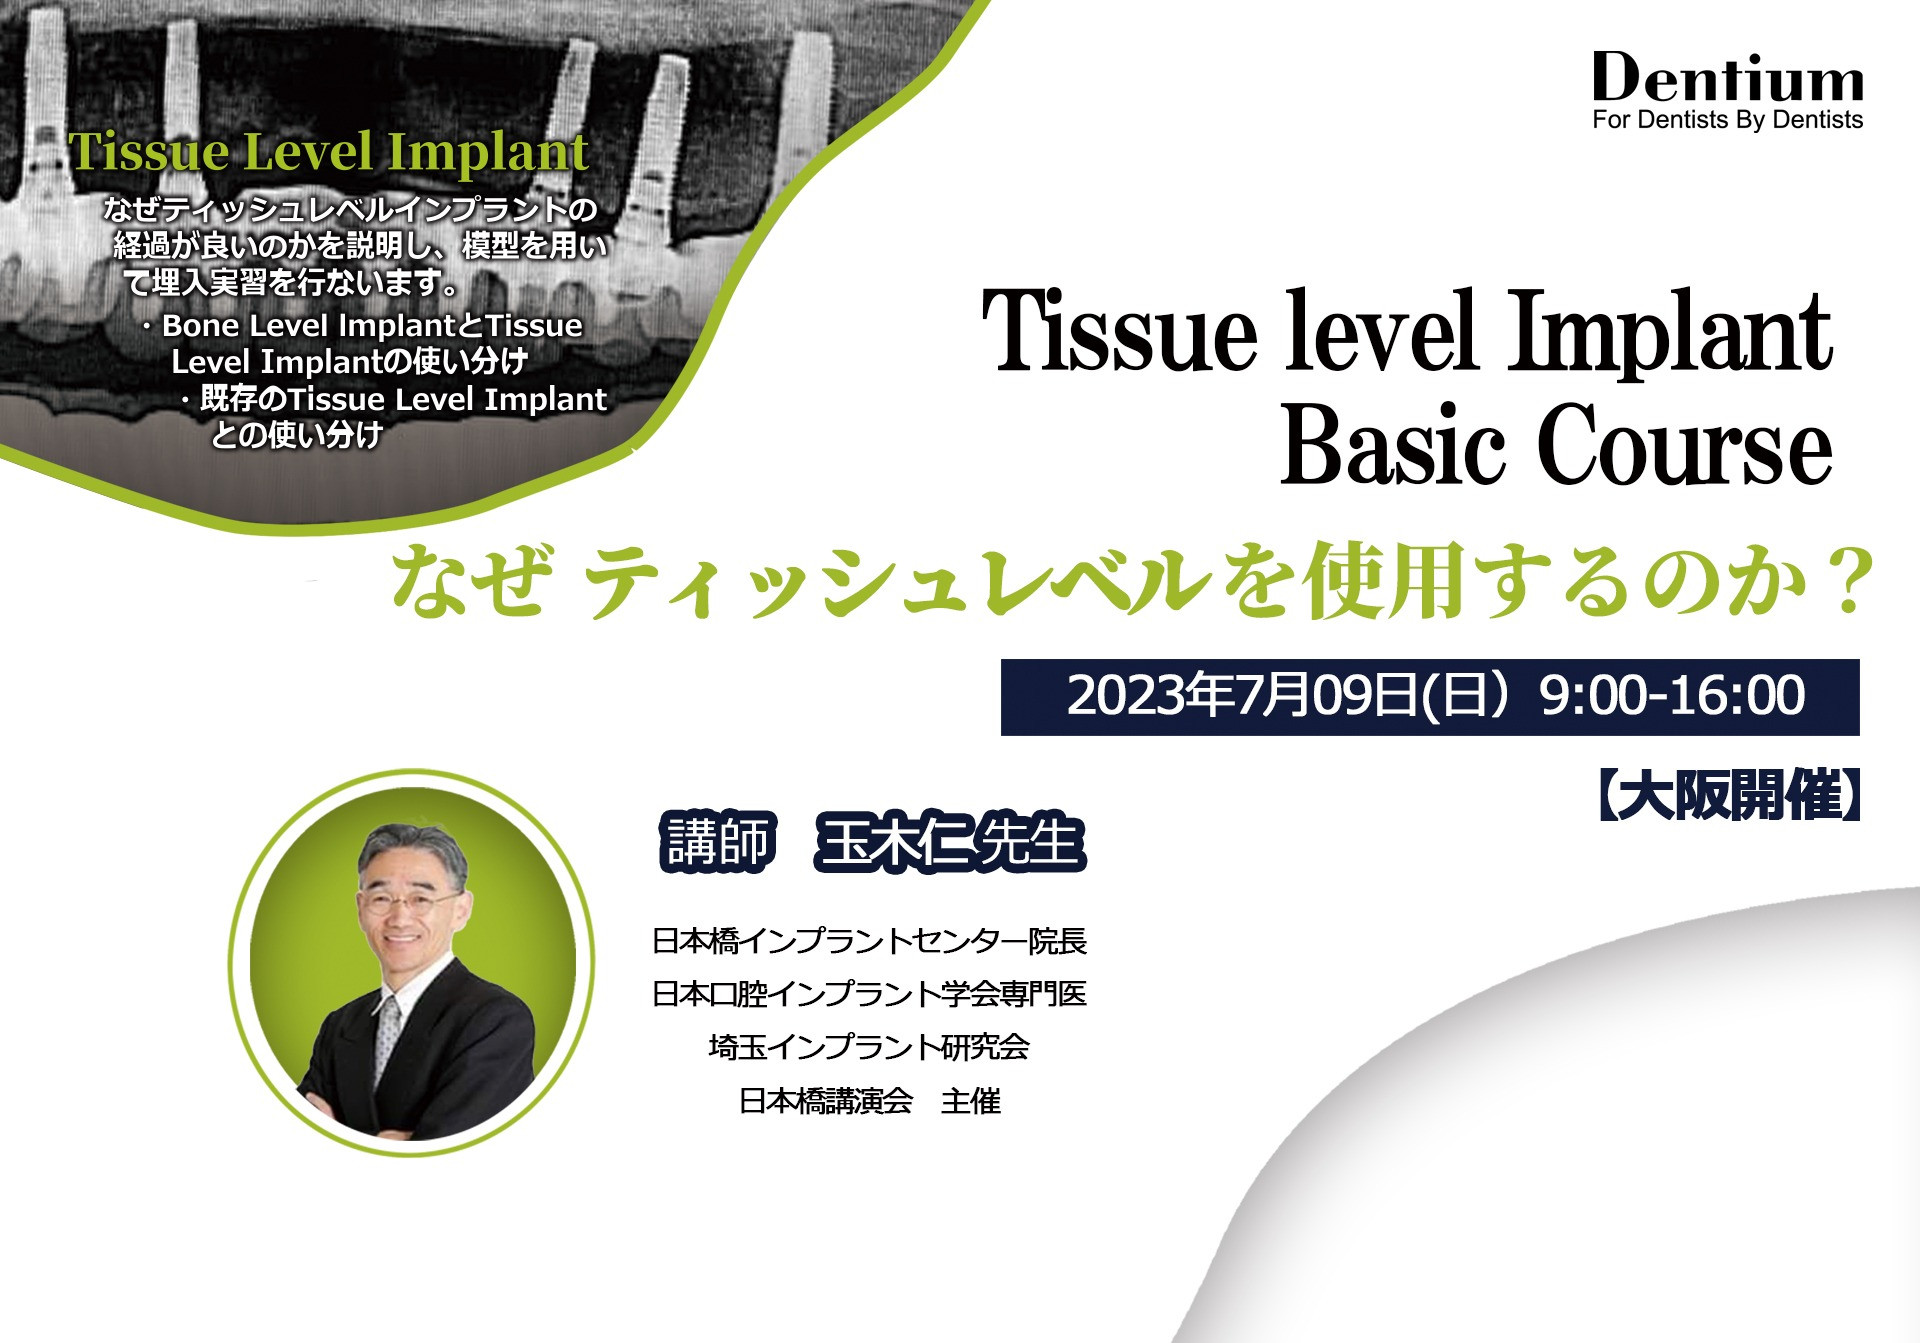 Tissue Level Implant Basic Course 2023 in Osaka